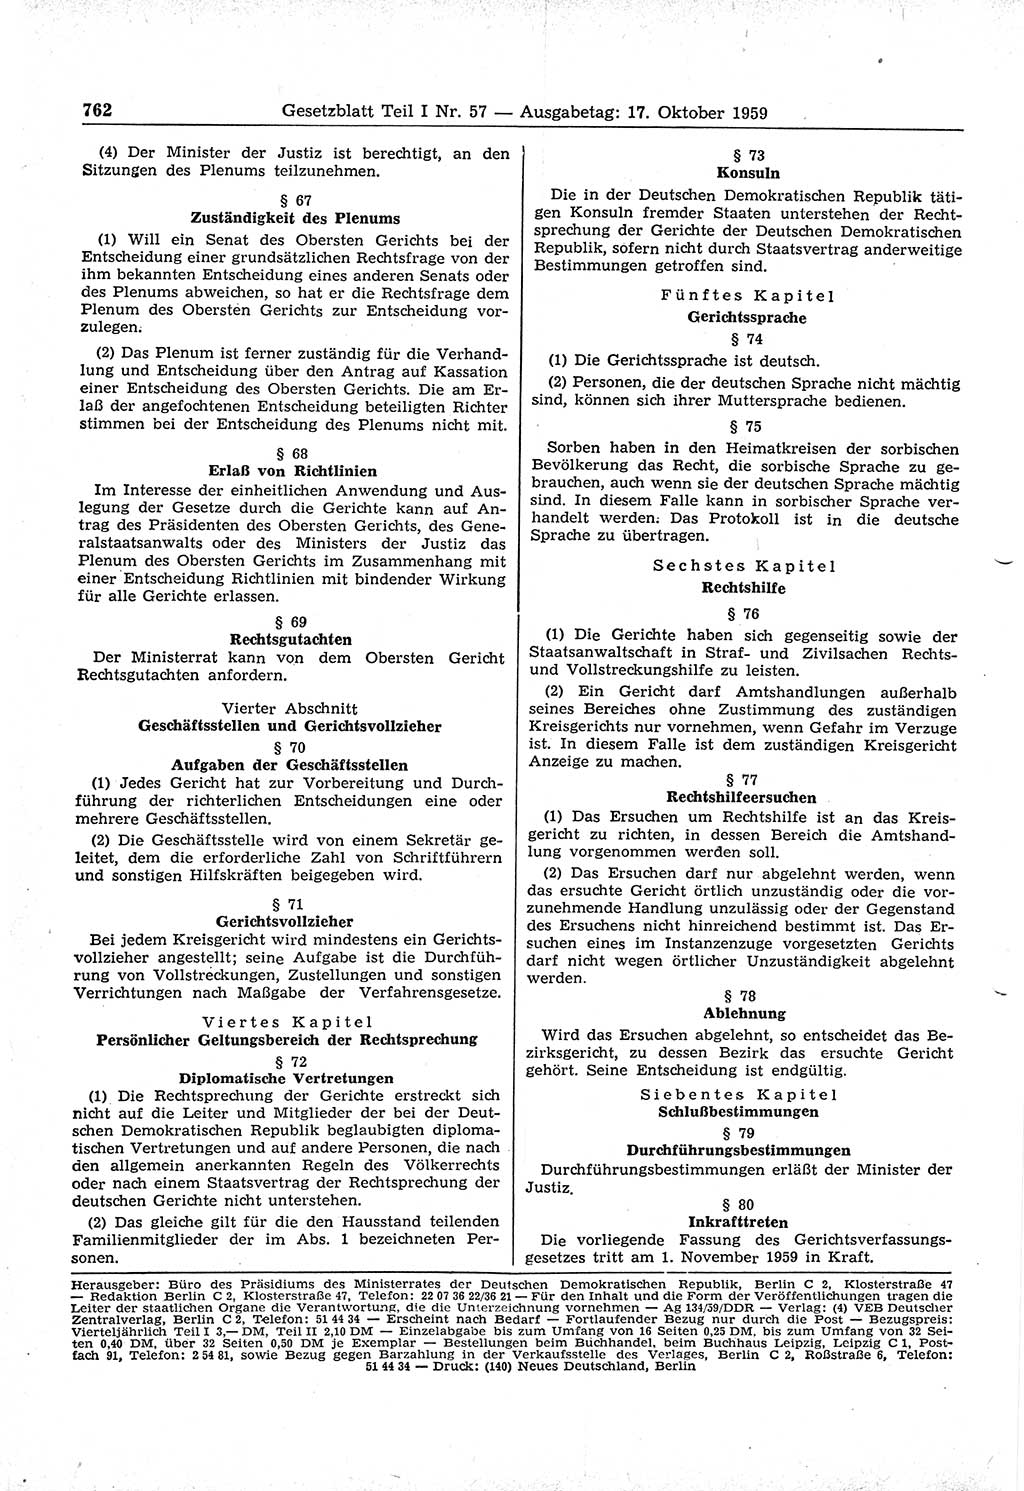 Gesetzblatt (GBl.) der Deutschen Demokratischen Republik (DDR) Teil Ⅰ 1959, Seite 762 (GBl. DDR Ⅰ 1959, S. 762)